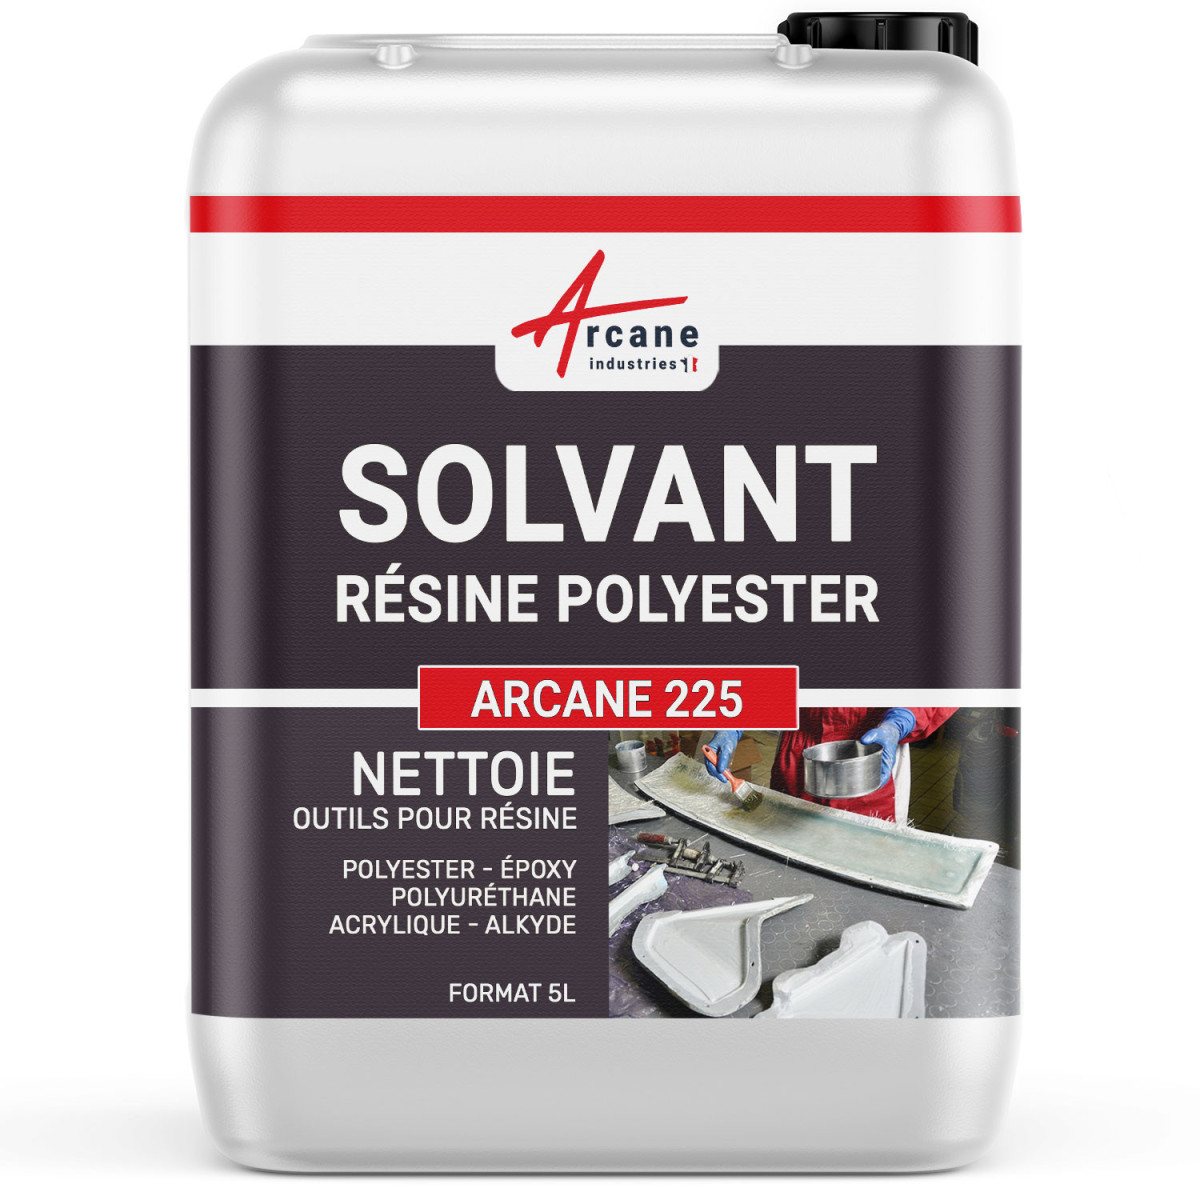 SOLVANT RÉSINE POLYESTER - Nettoyant résine polyester synthétique naturelle Gel coat Substitut acétone Collage élastomère